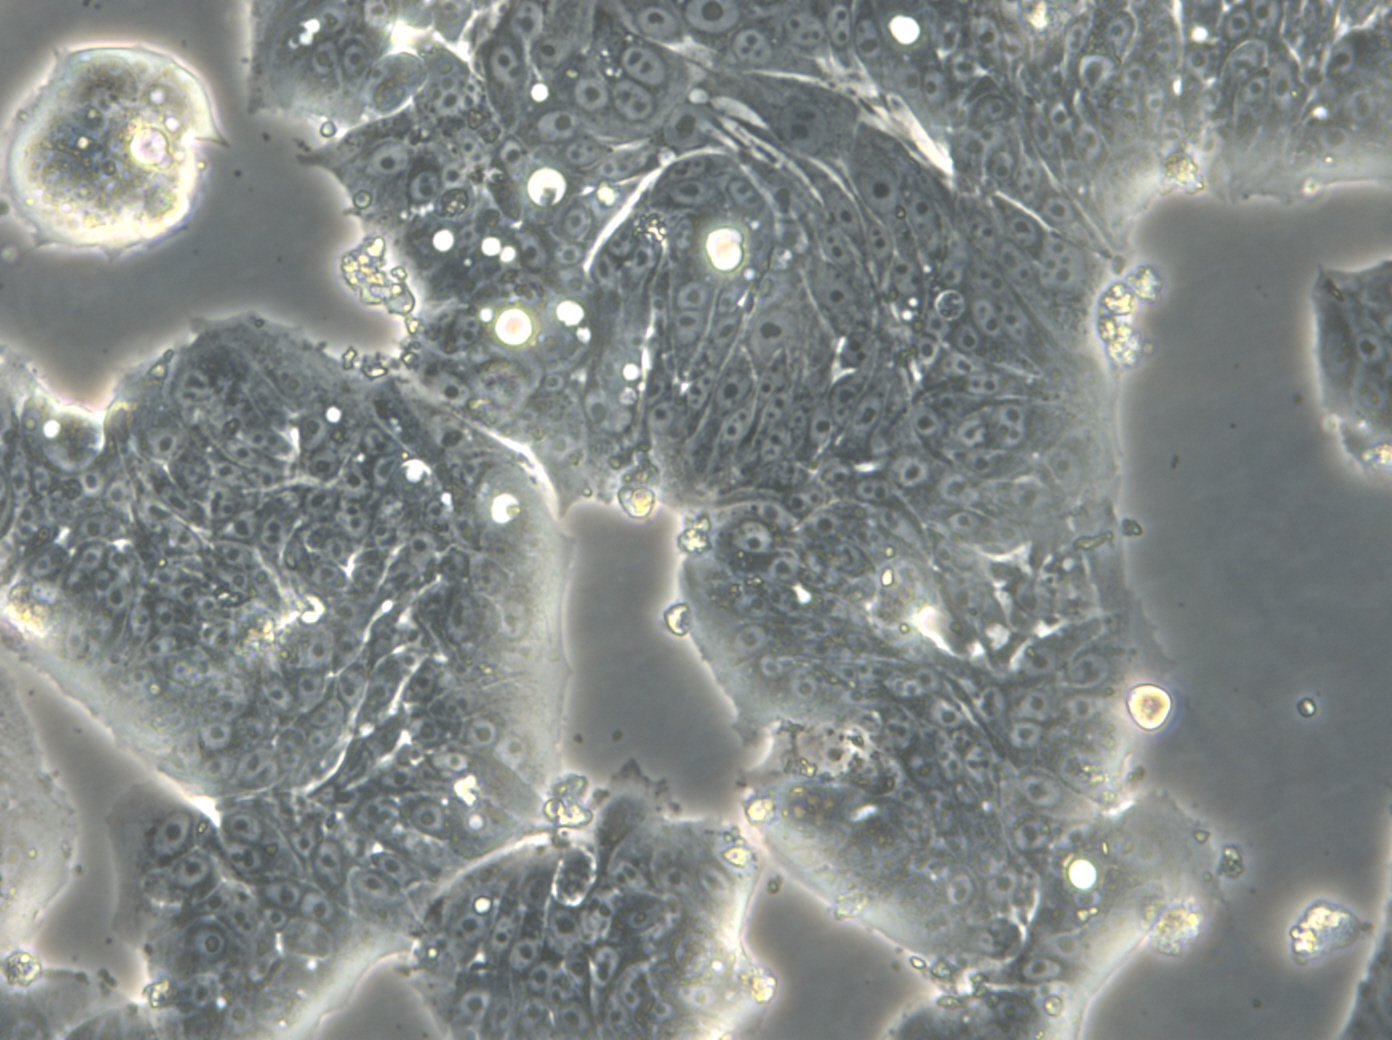 HROC39 T0 M2 Cells